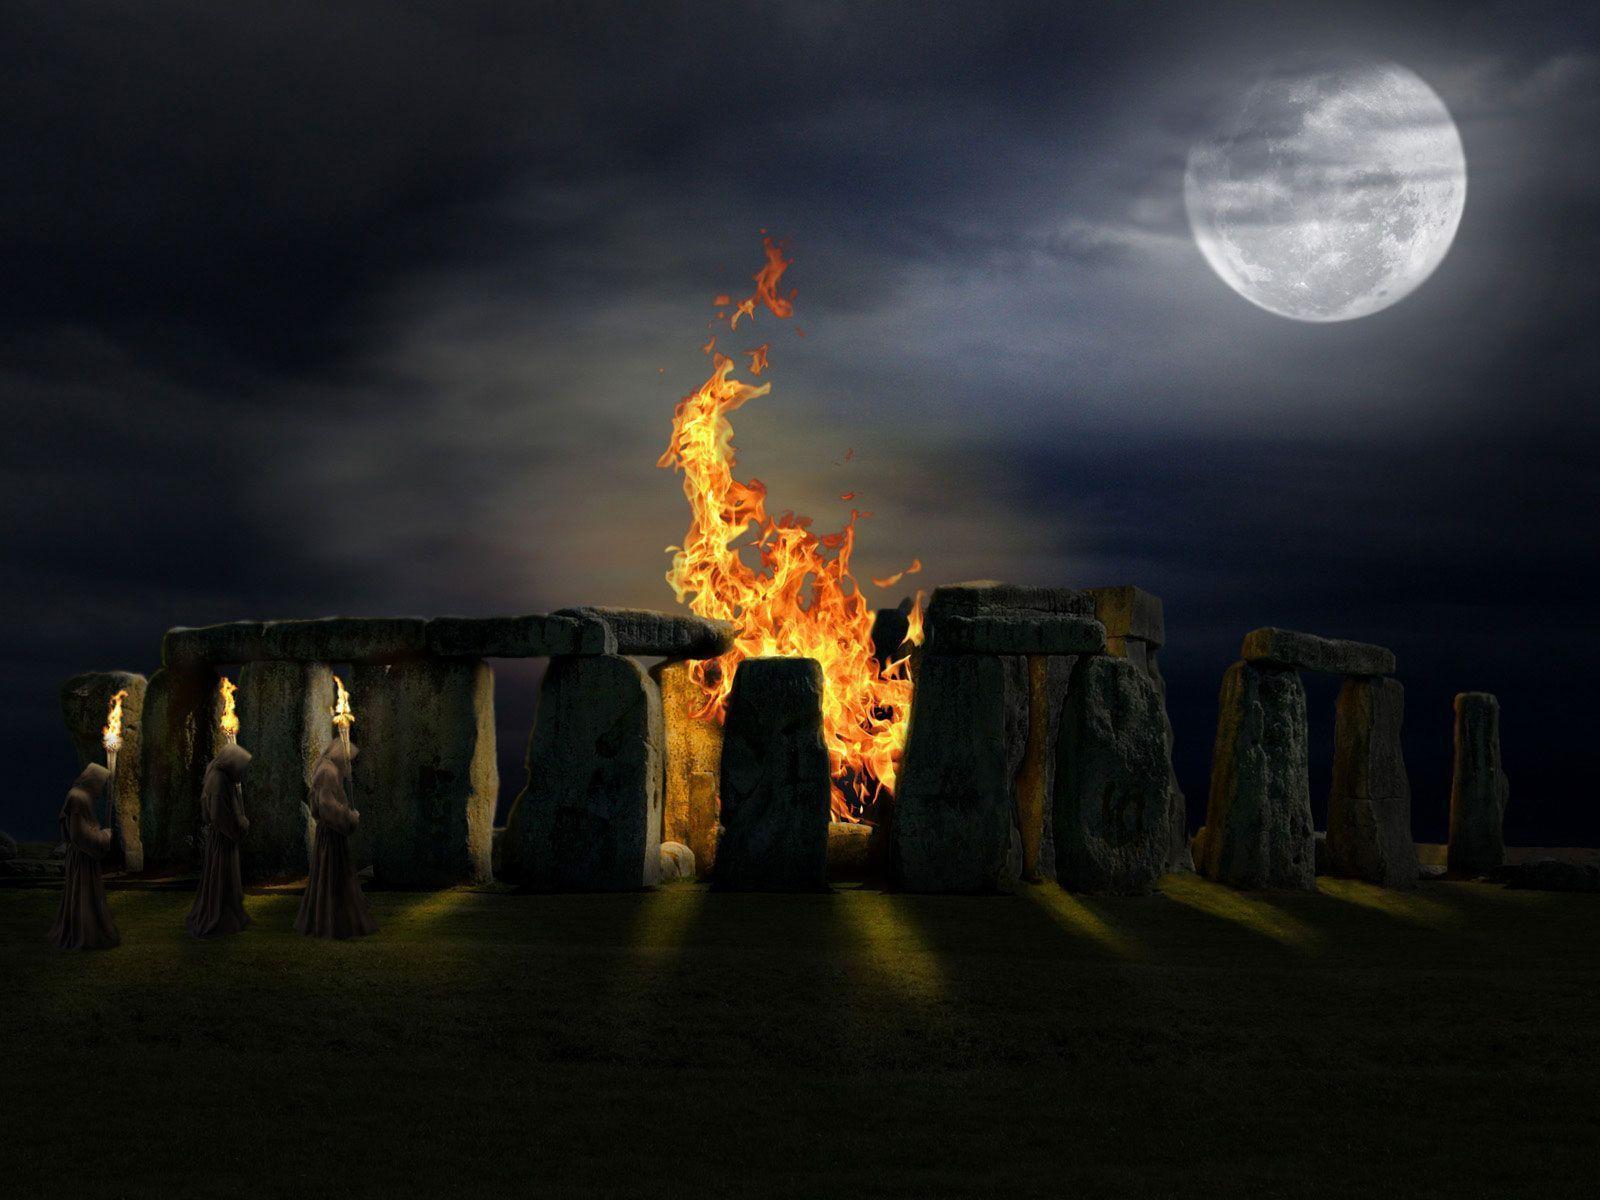 Druid Wallpaper, Free Wallpaper Druids Stonehenge Fire In Night